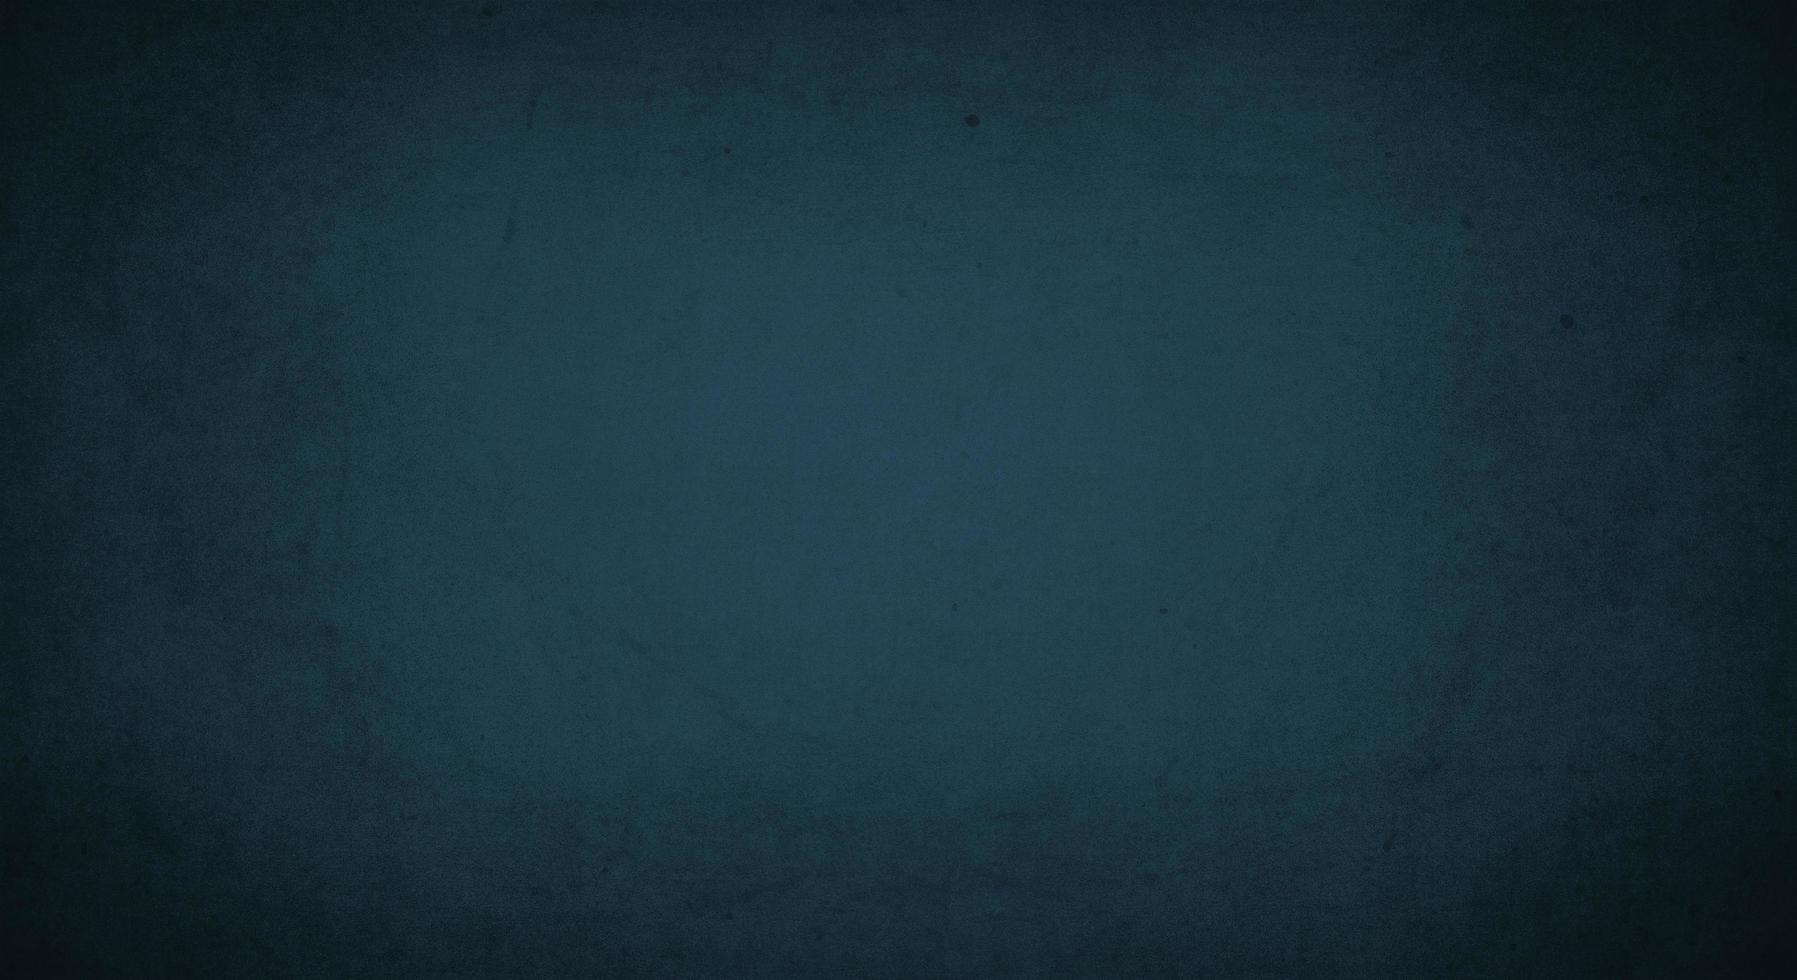 fond grunge bleu foncé avec bordure douce et sombre, vieux fond vintage photo